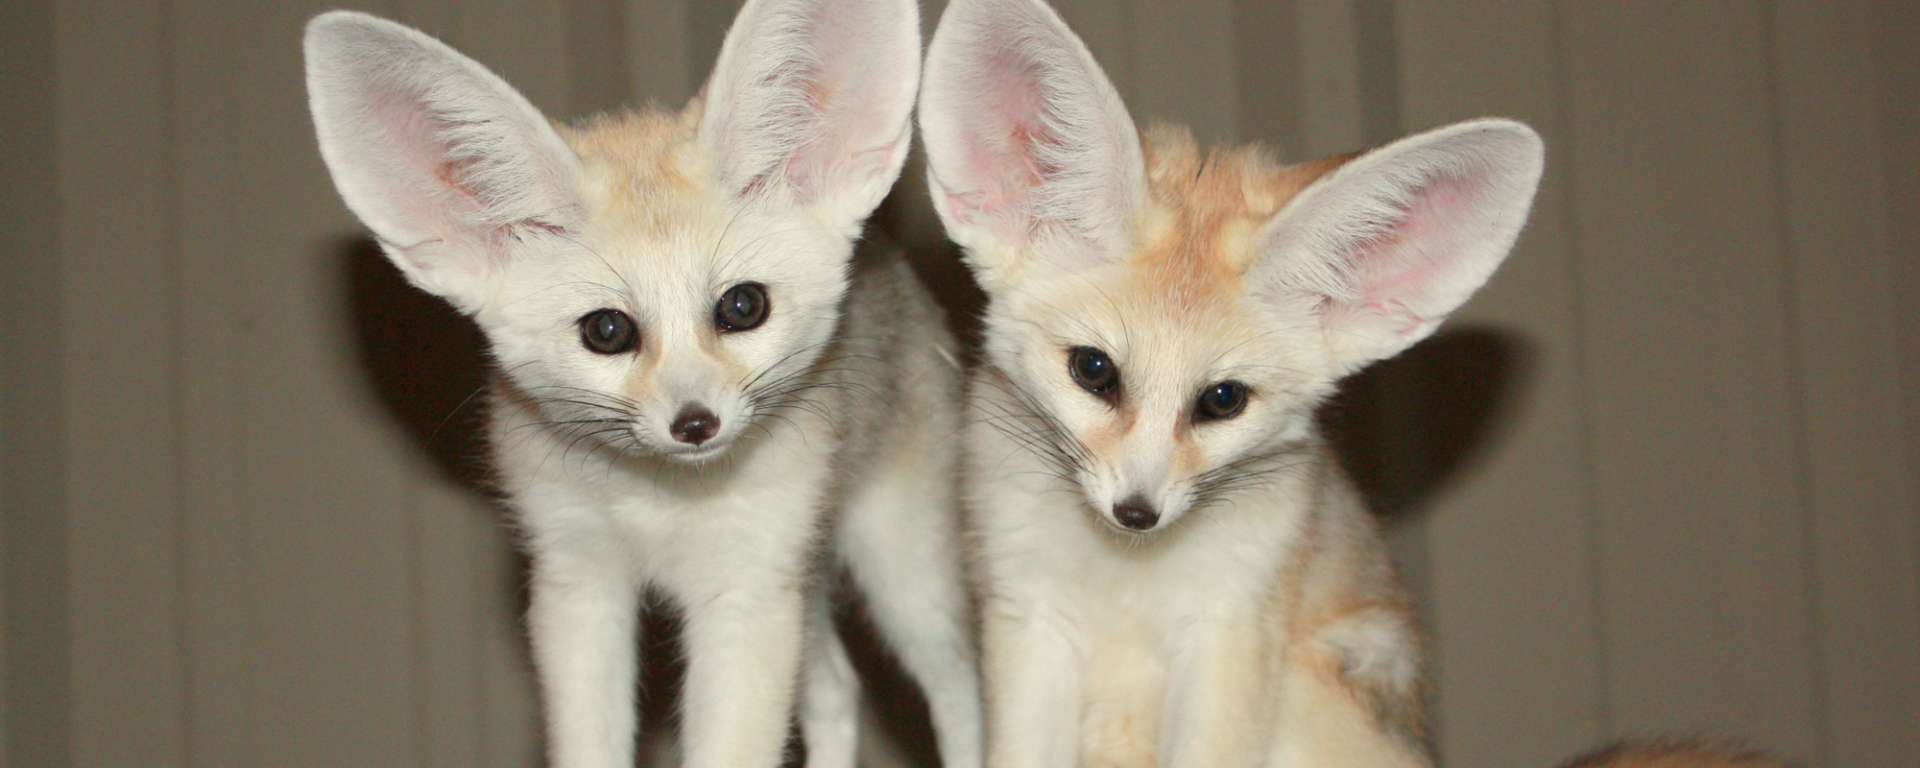 Fennec Fox Babies